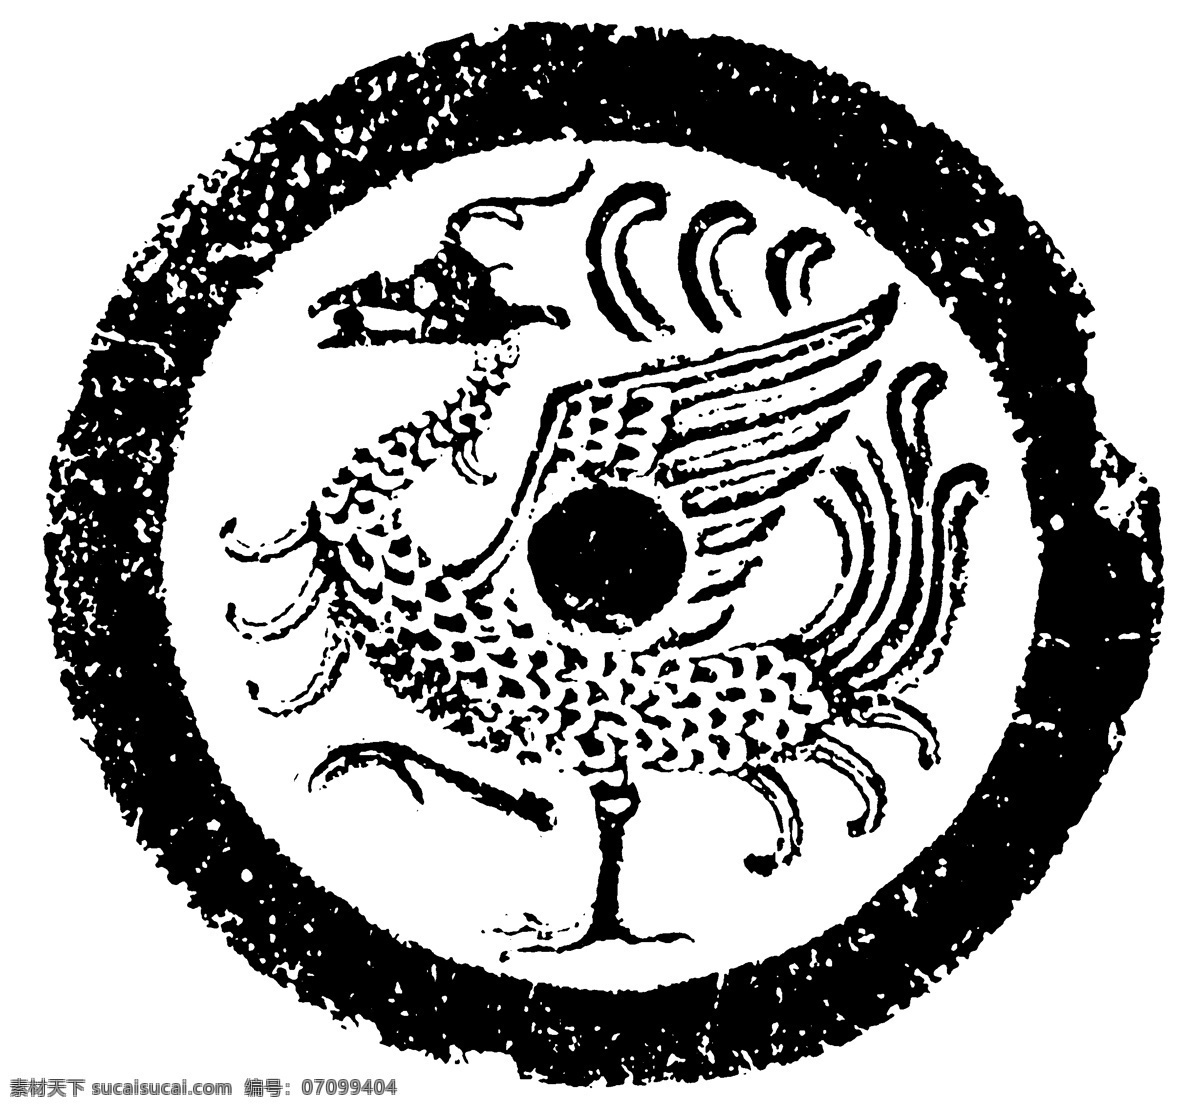 瓦当图案 秦汉时期图案 中国传统图案 图案111 图案 设计素材 瓦当纹饰 装饰图案 书画美术 白色